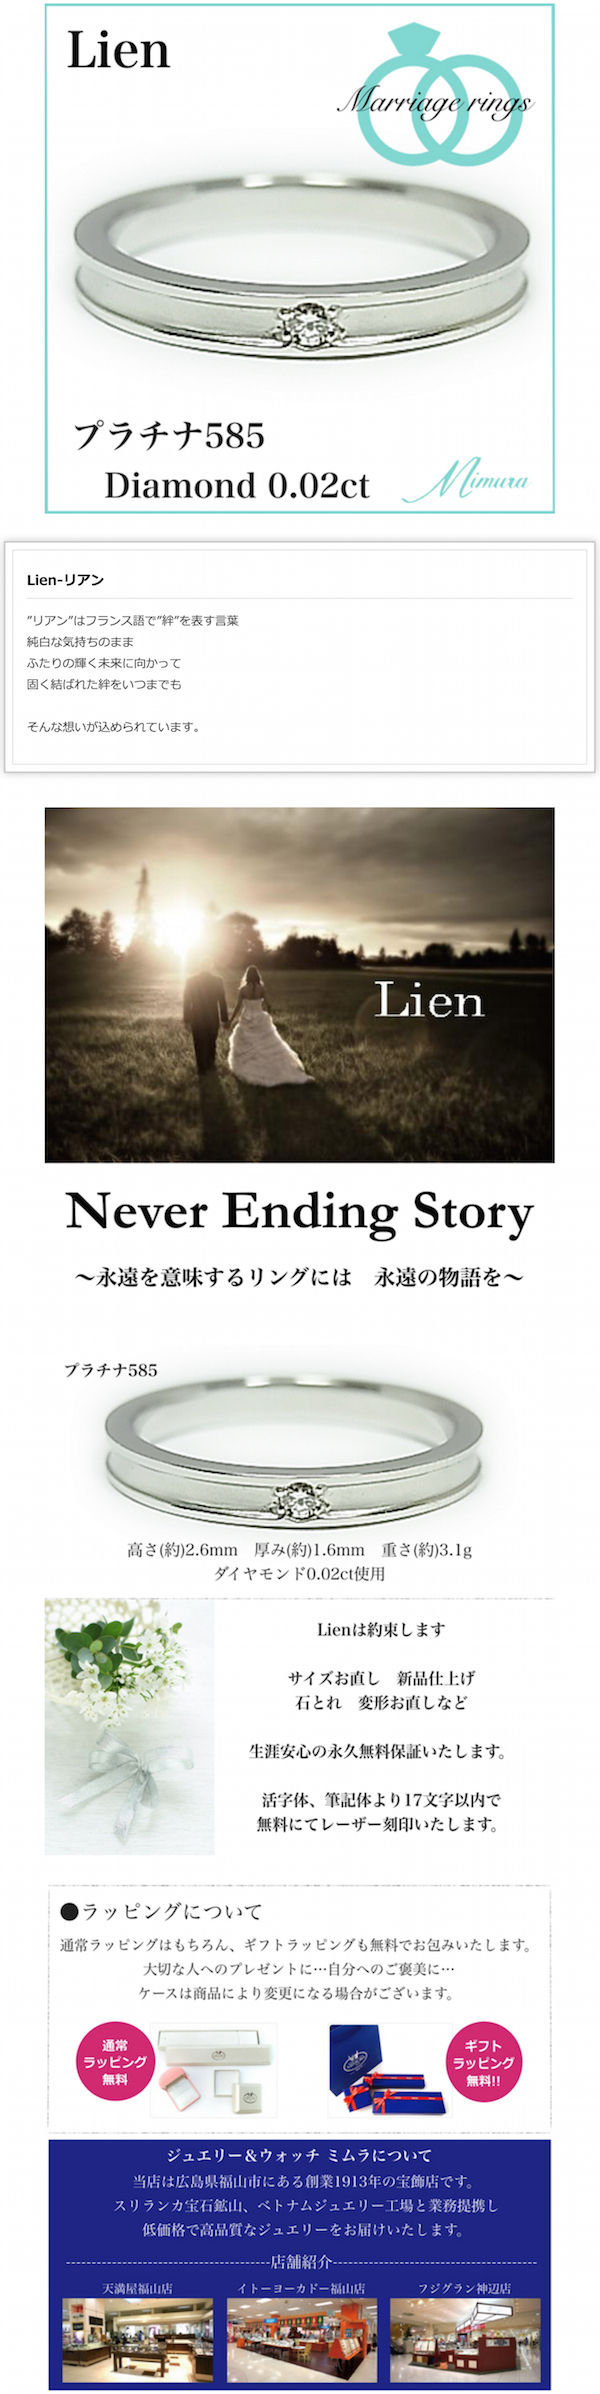 広島県福山市ブライダル結婚指輪